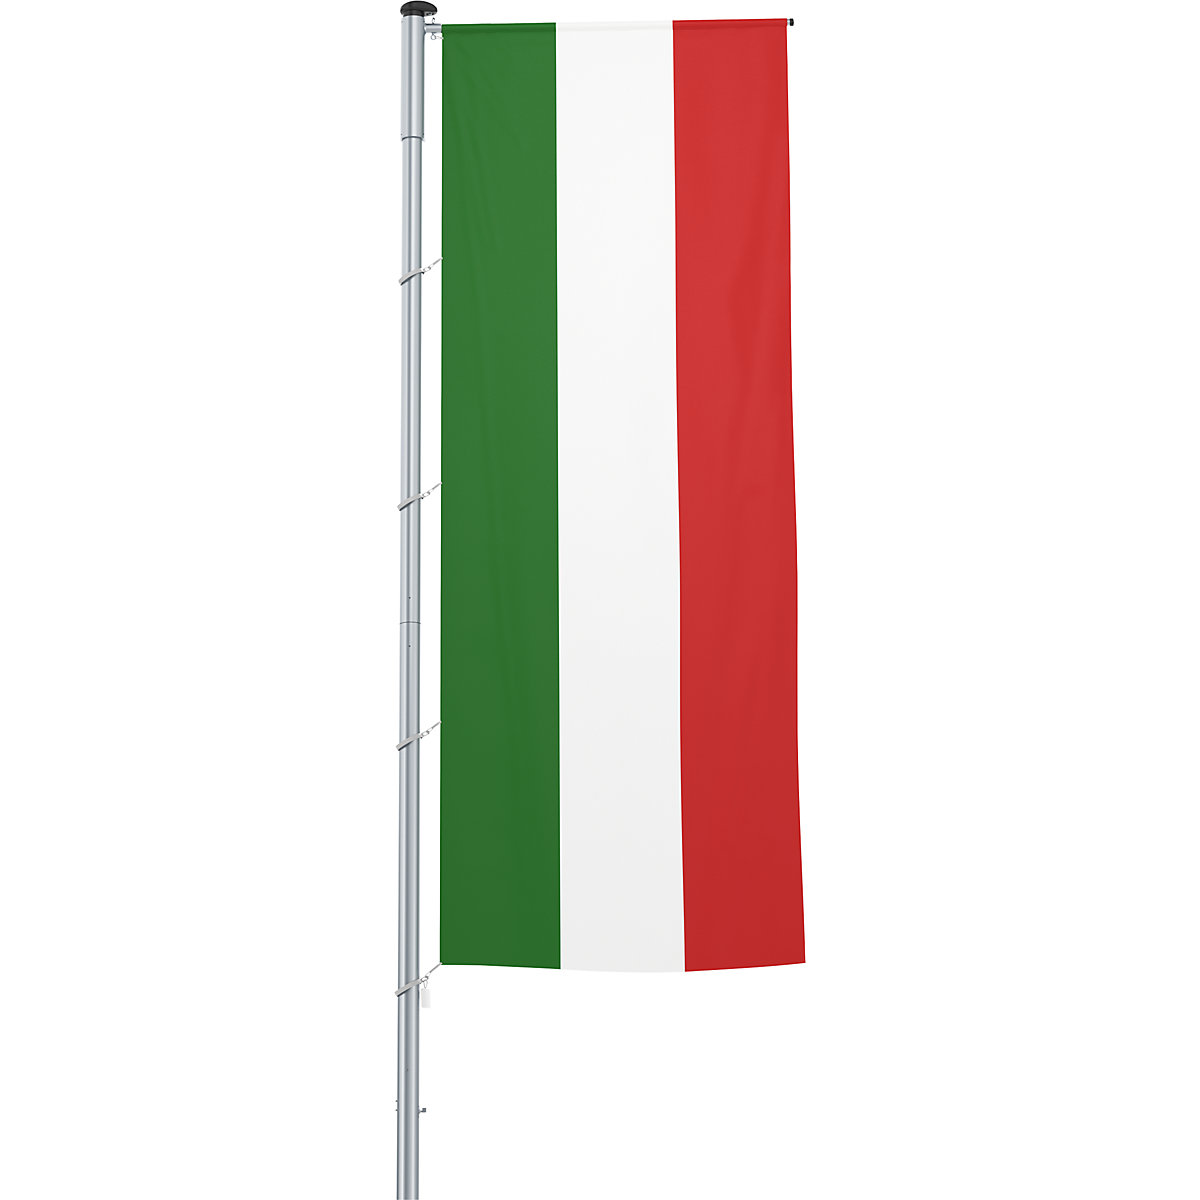 Vlajka na pozdĺžne upevnenie na stožiar/národná vlajka – Mannus, formát 1,2 x 3 m, Taliansko-7